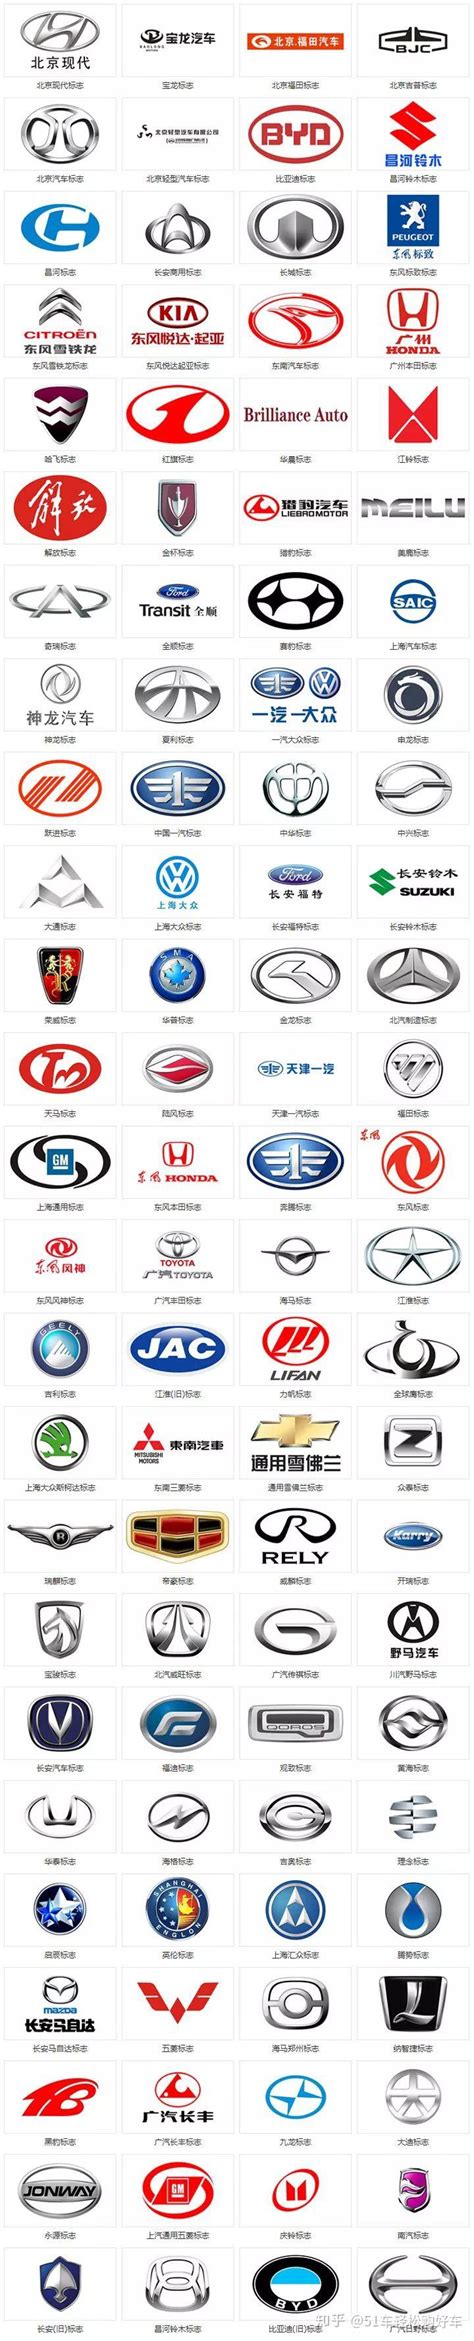 最全360个汽车标志, 能认出几个国产车?